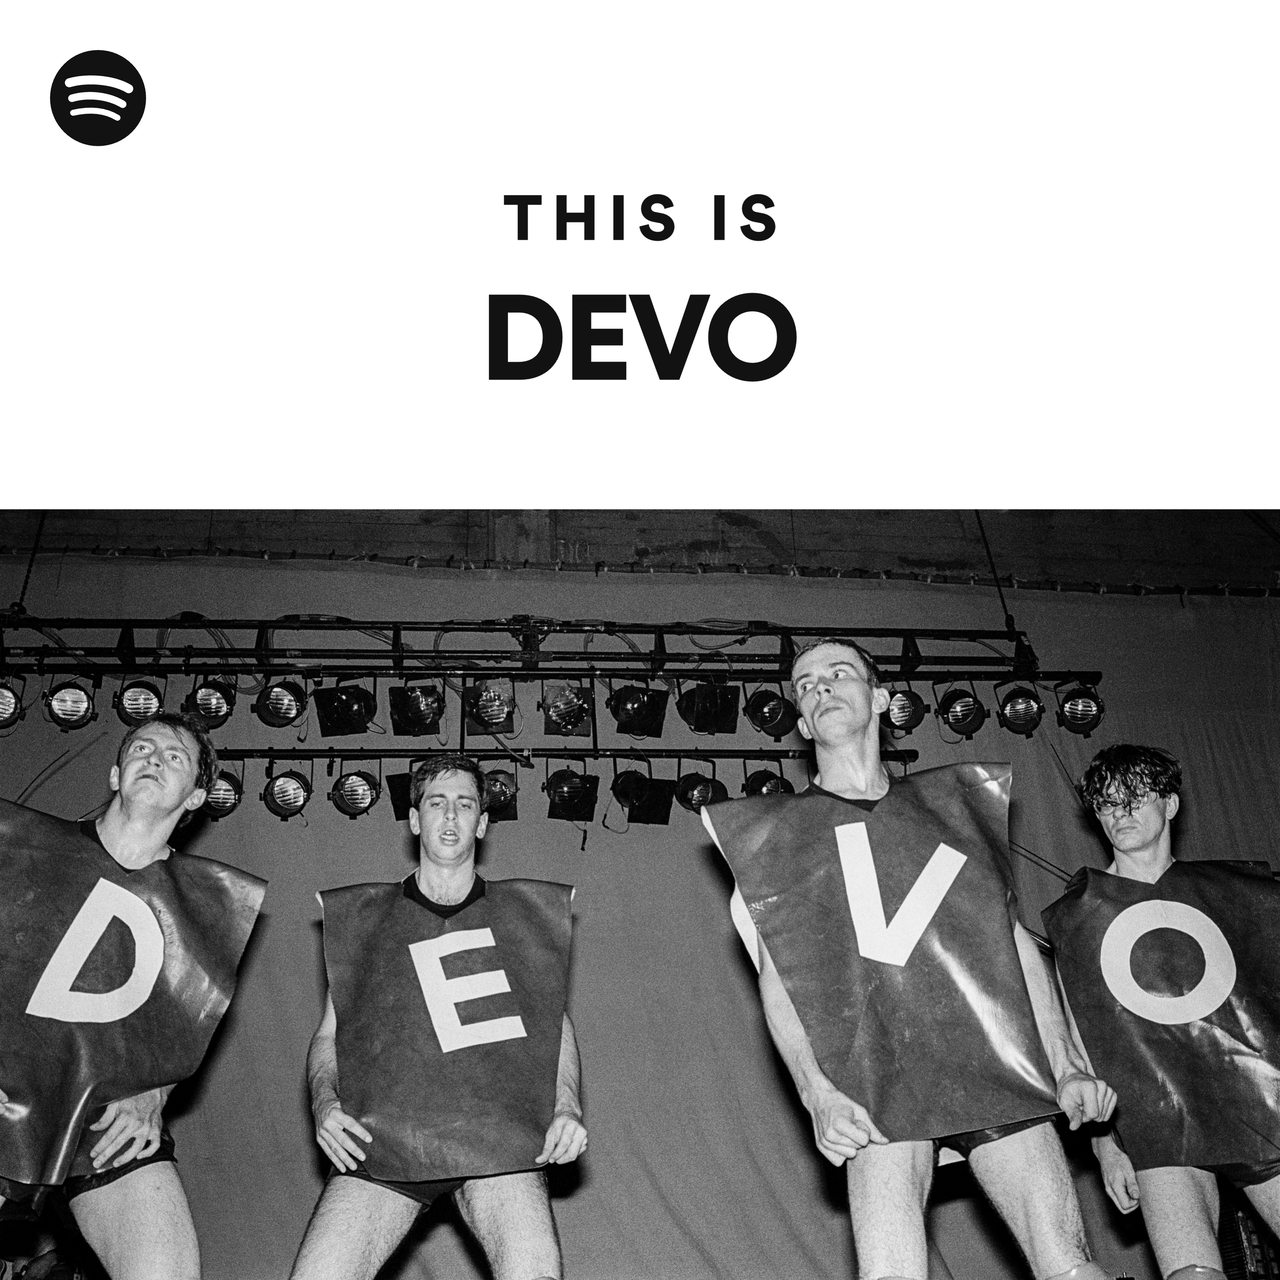 This Is DEVO by spotify Spotify Playlist